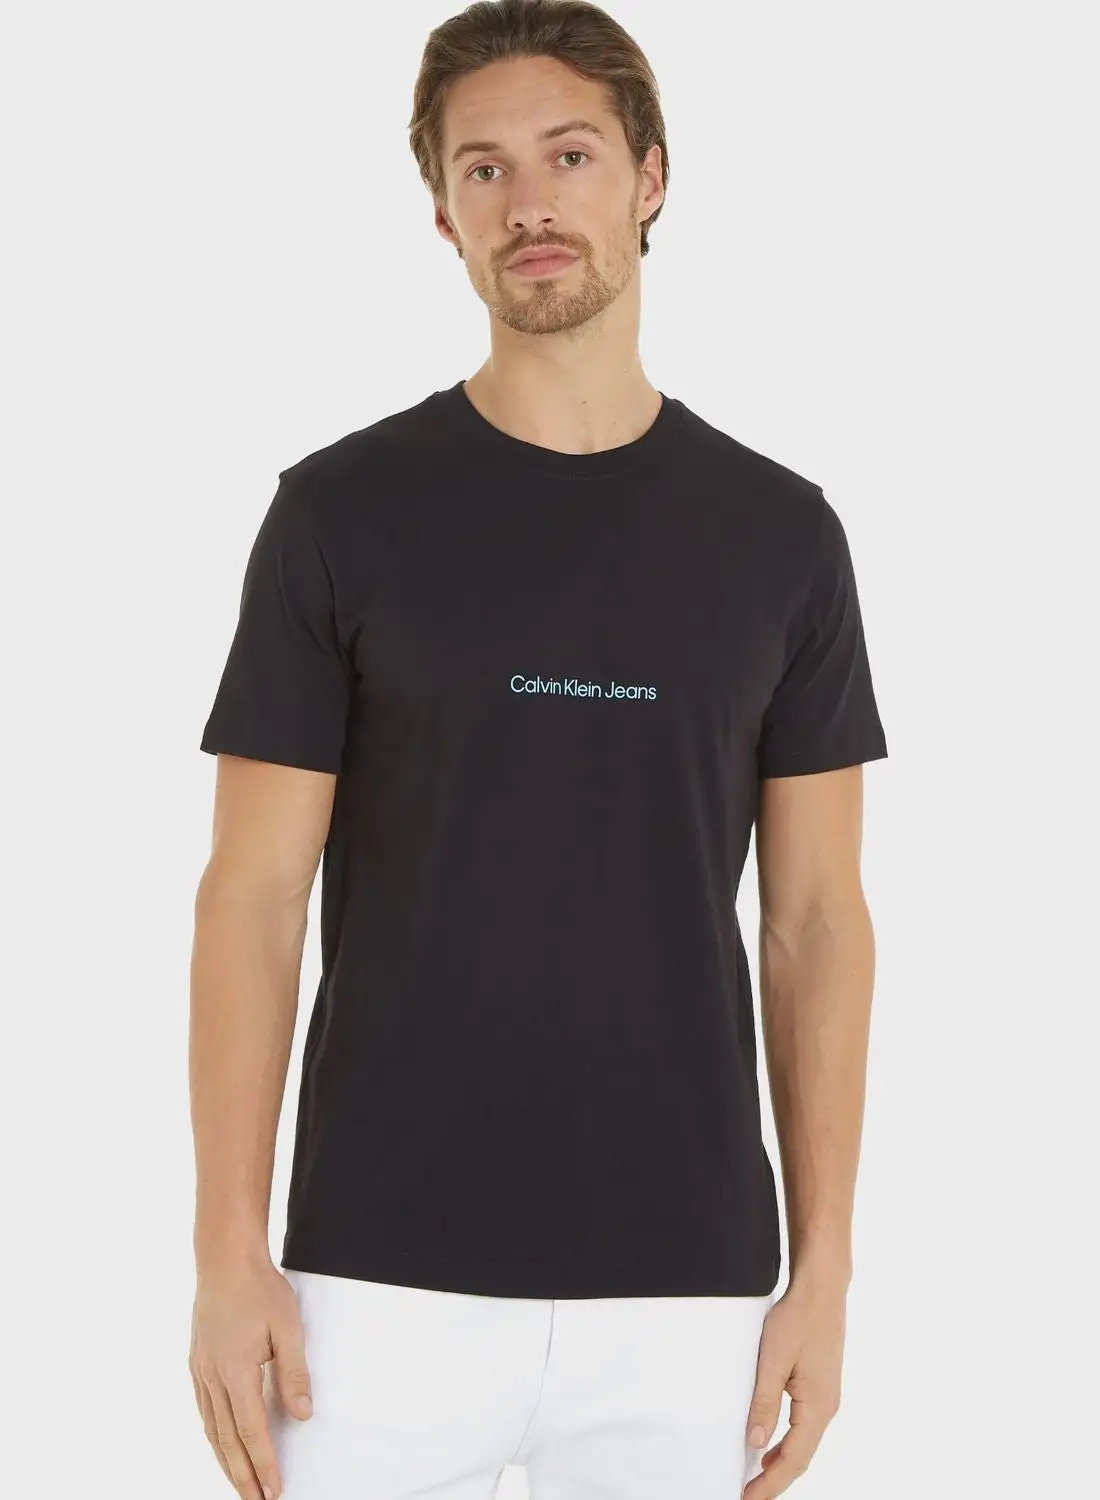 Calvin Klein Jeans Slogan Crew Neck T-Shirt